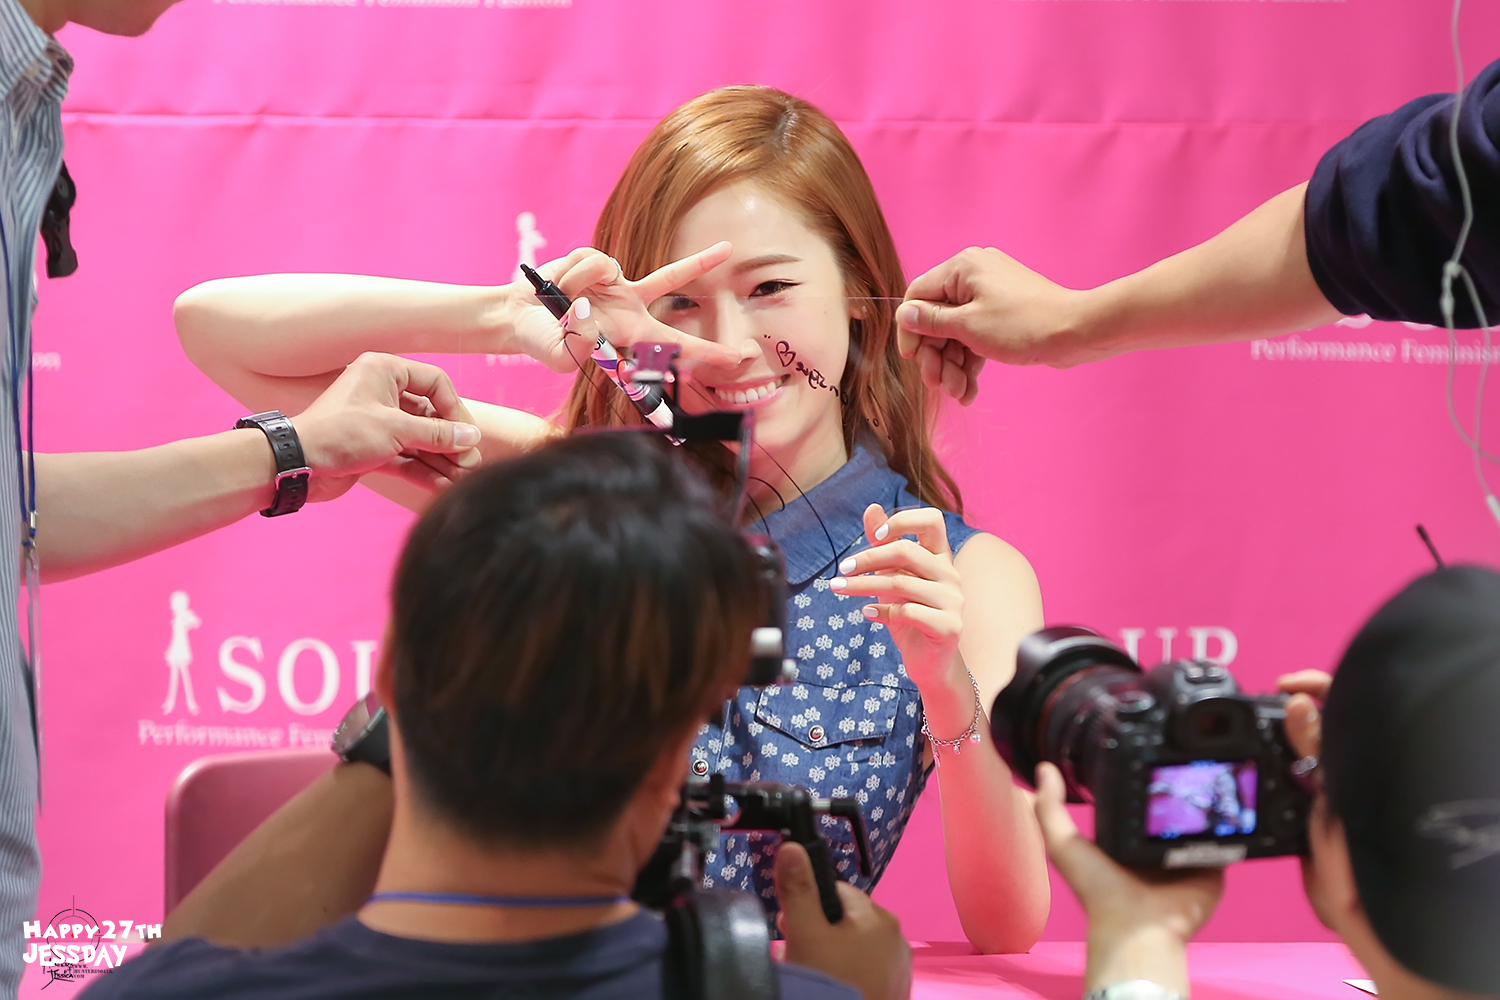 [PIC][14-06-2014]Jessica tham dự buổi fansign lần 2 cho thương hiệu "SOUP" vào trưa nay - Page 2 266E984E5531137C33561F